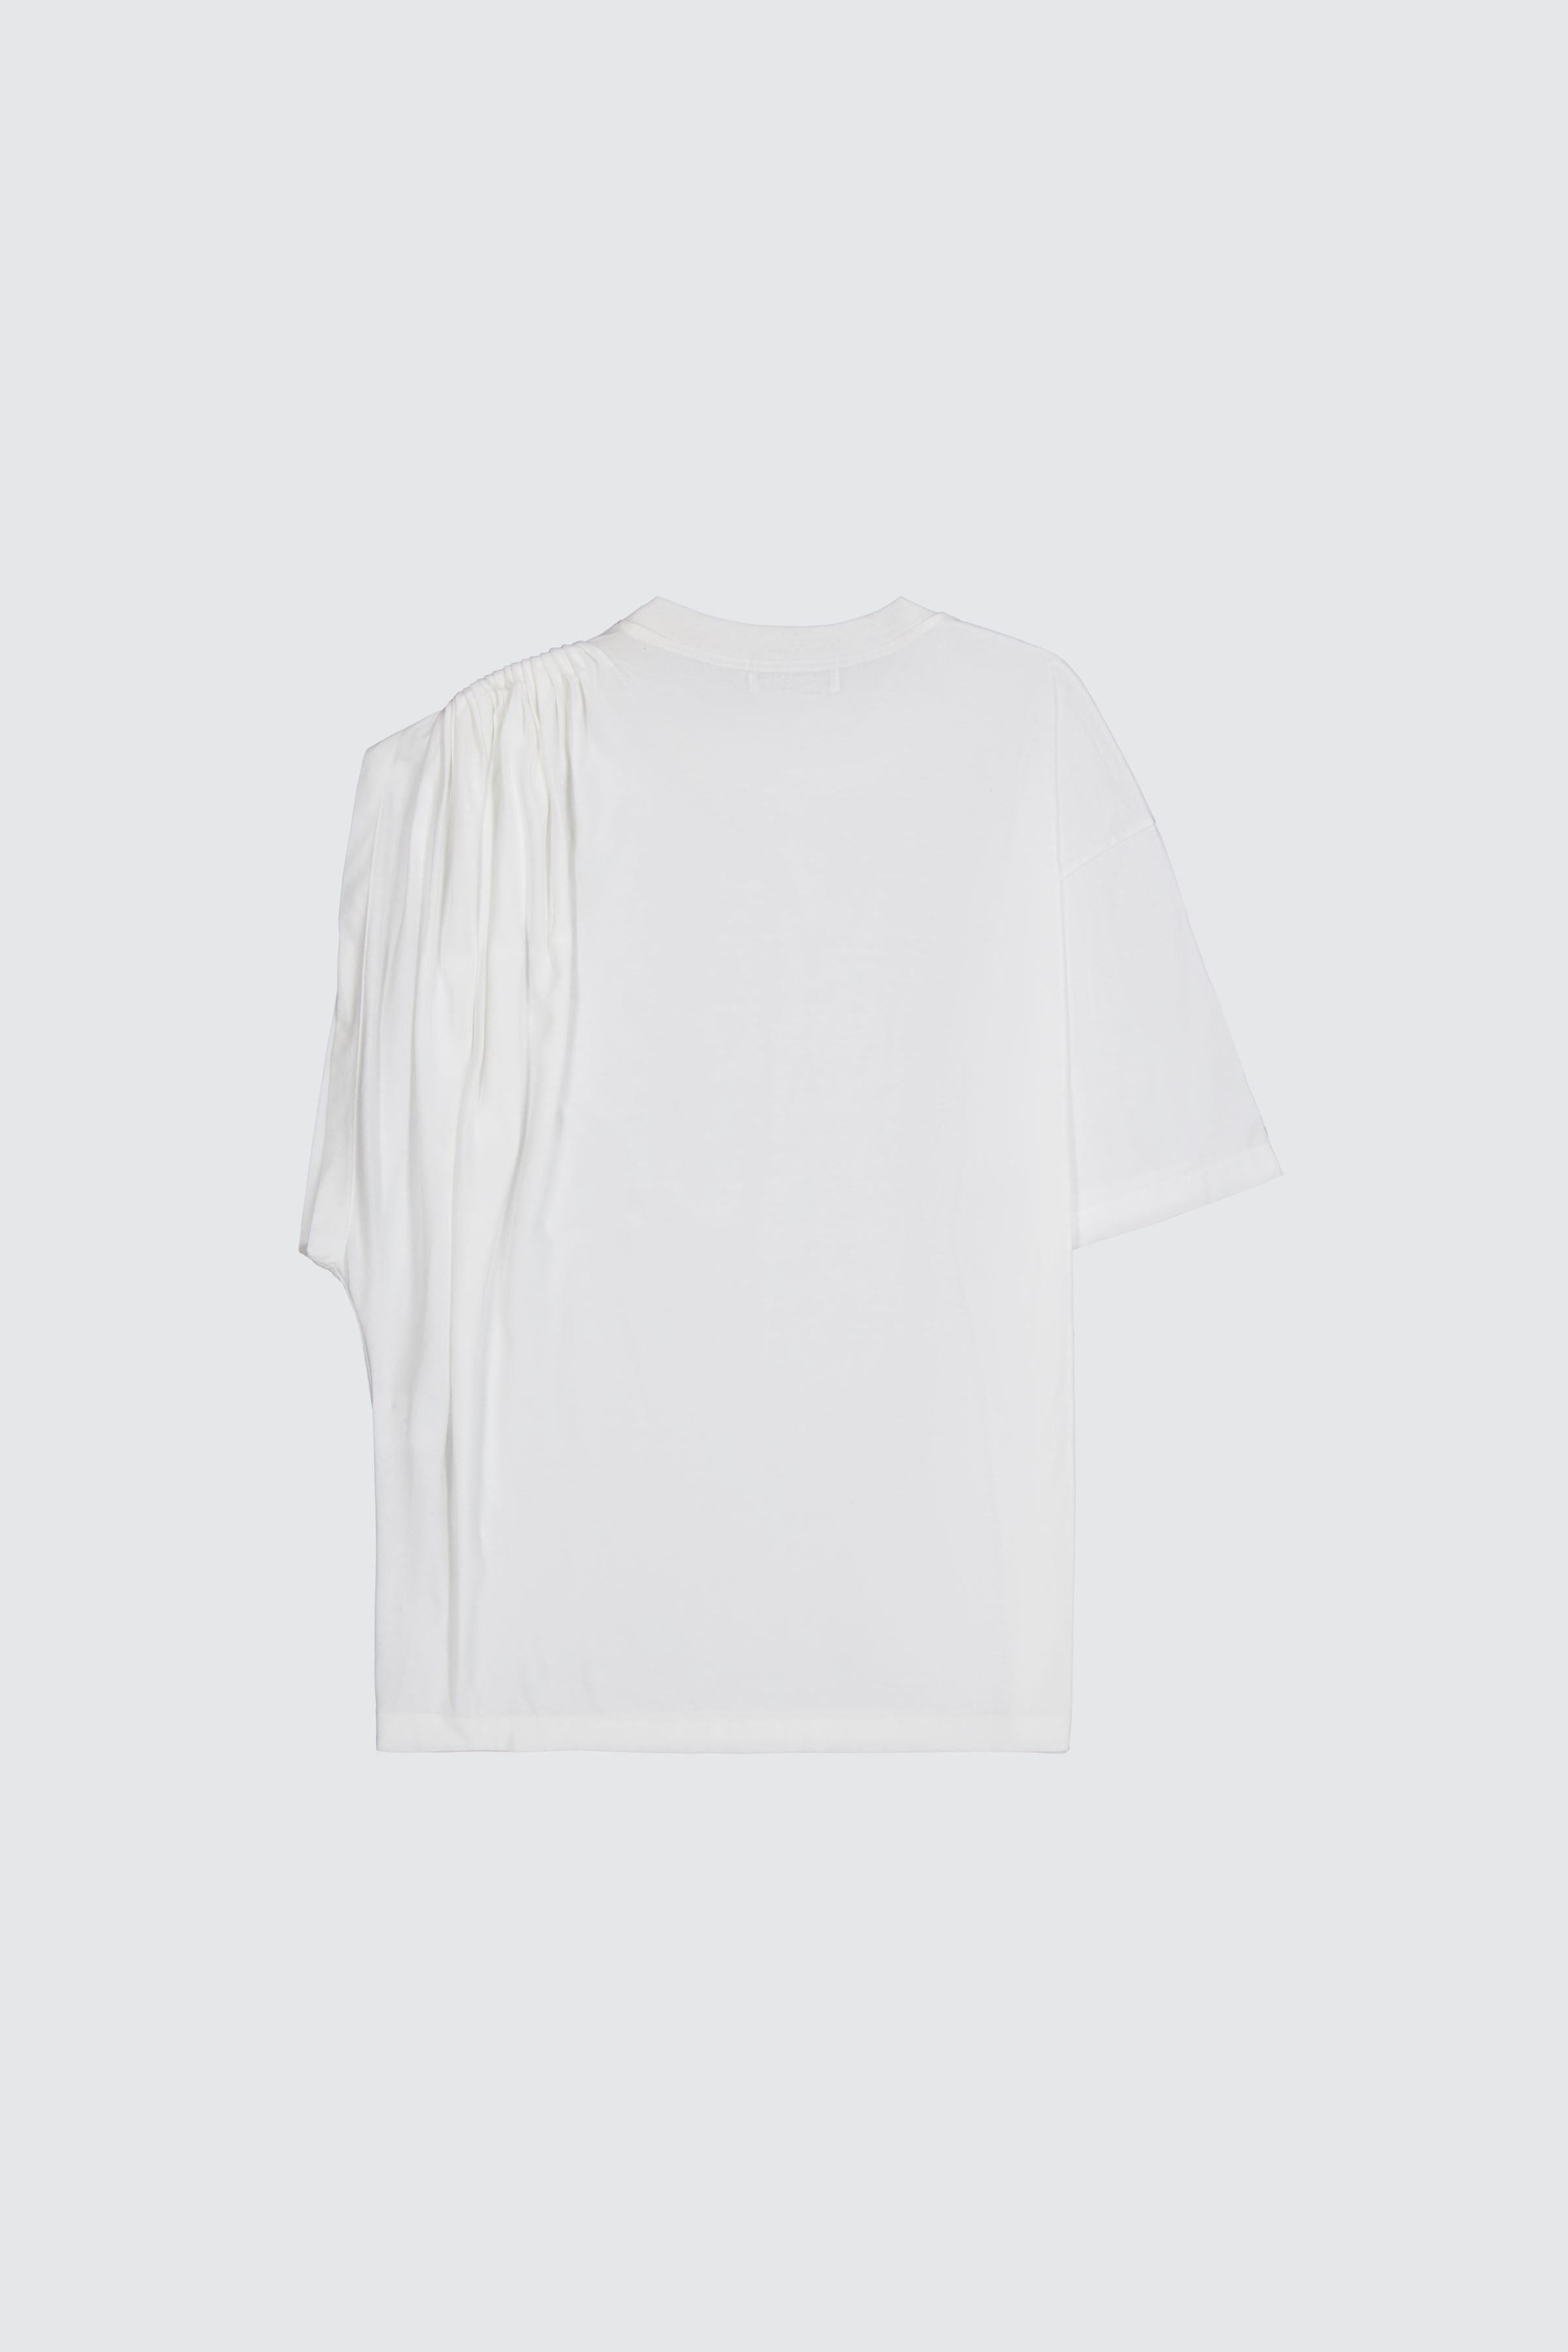 Laneus t-shirt white classic con drappeggio sulla spalla